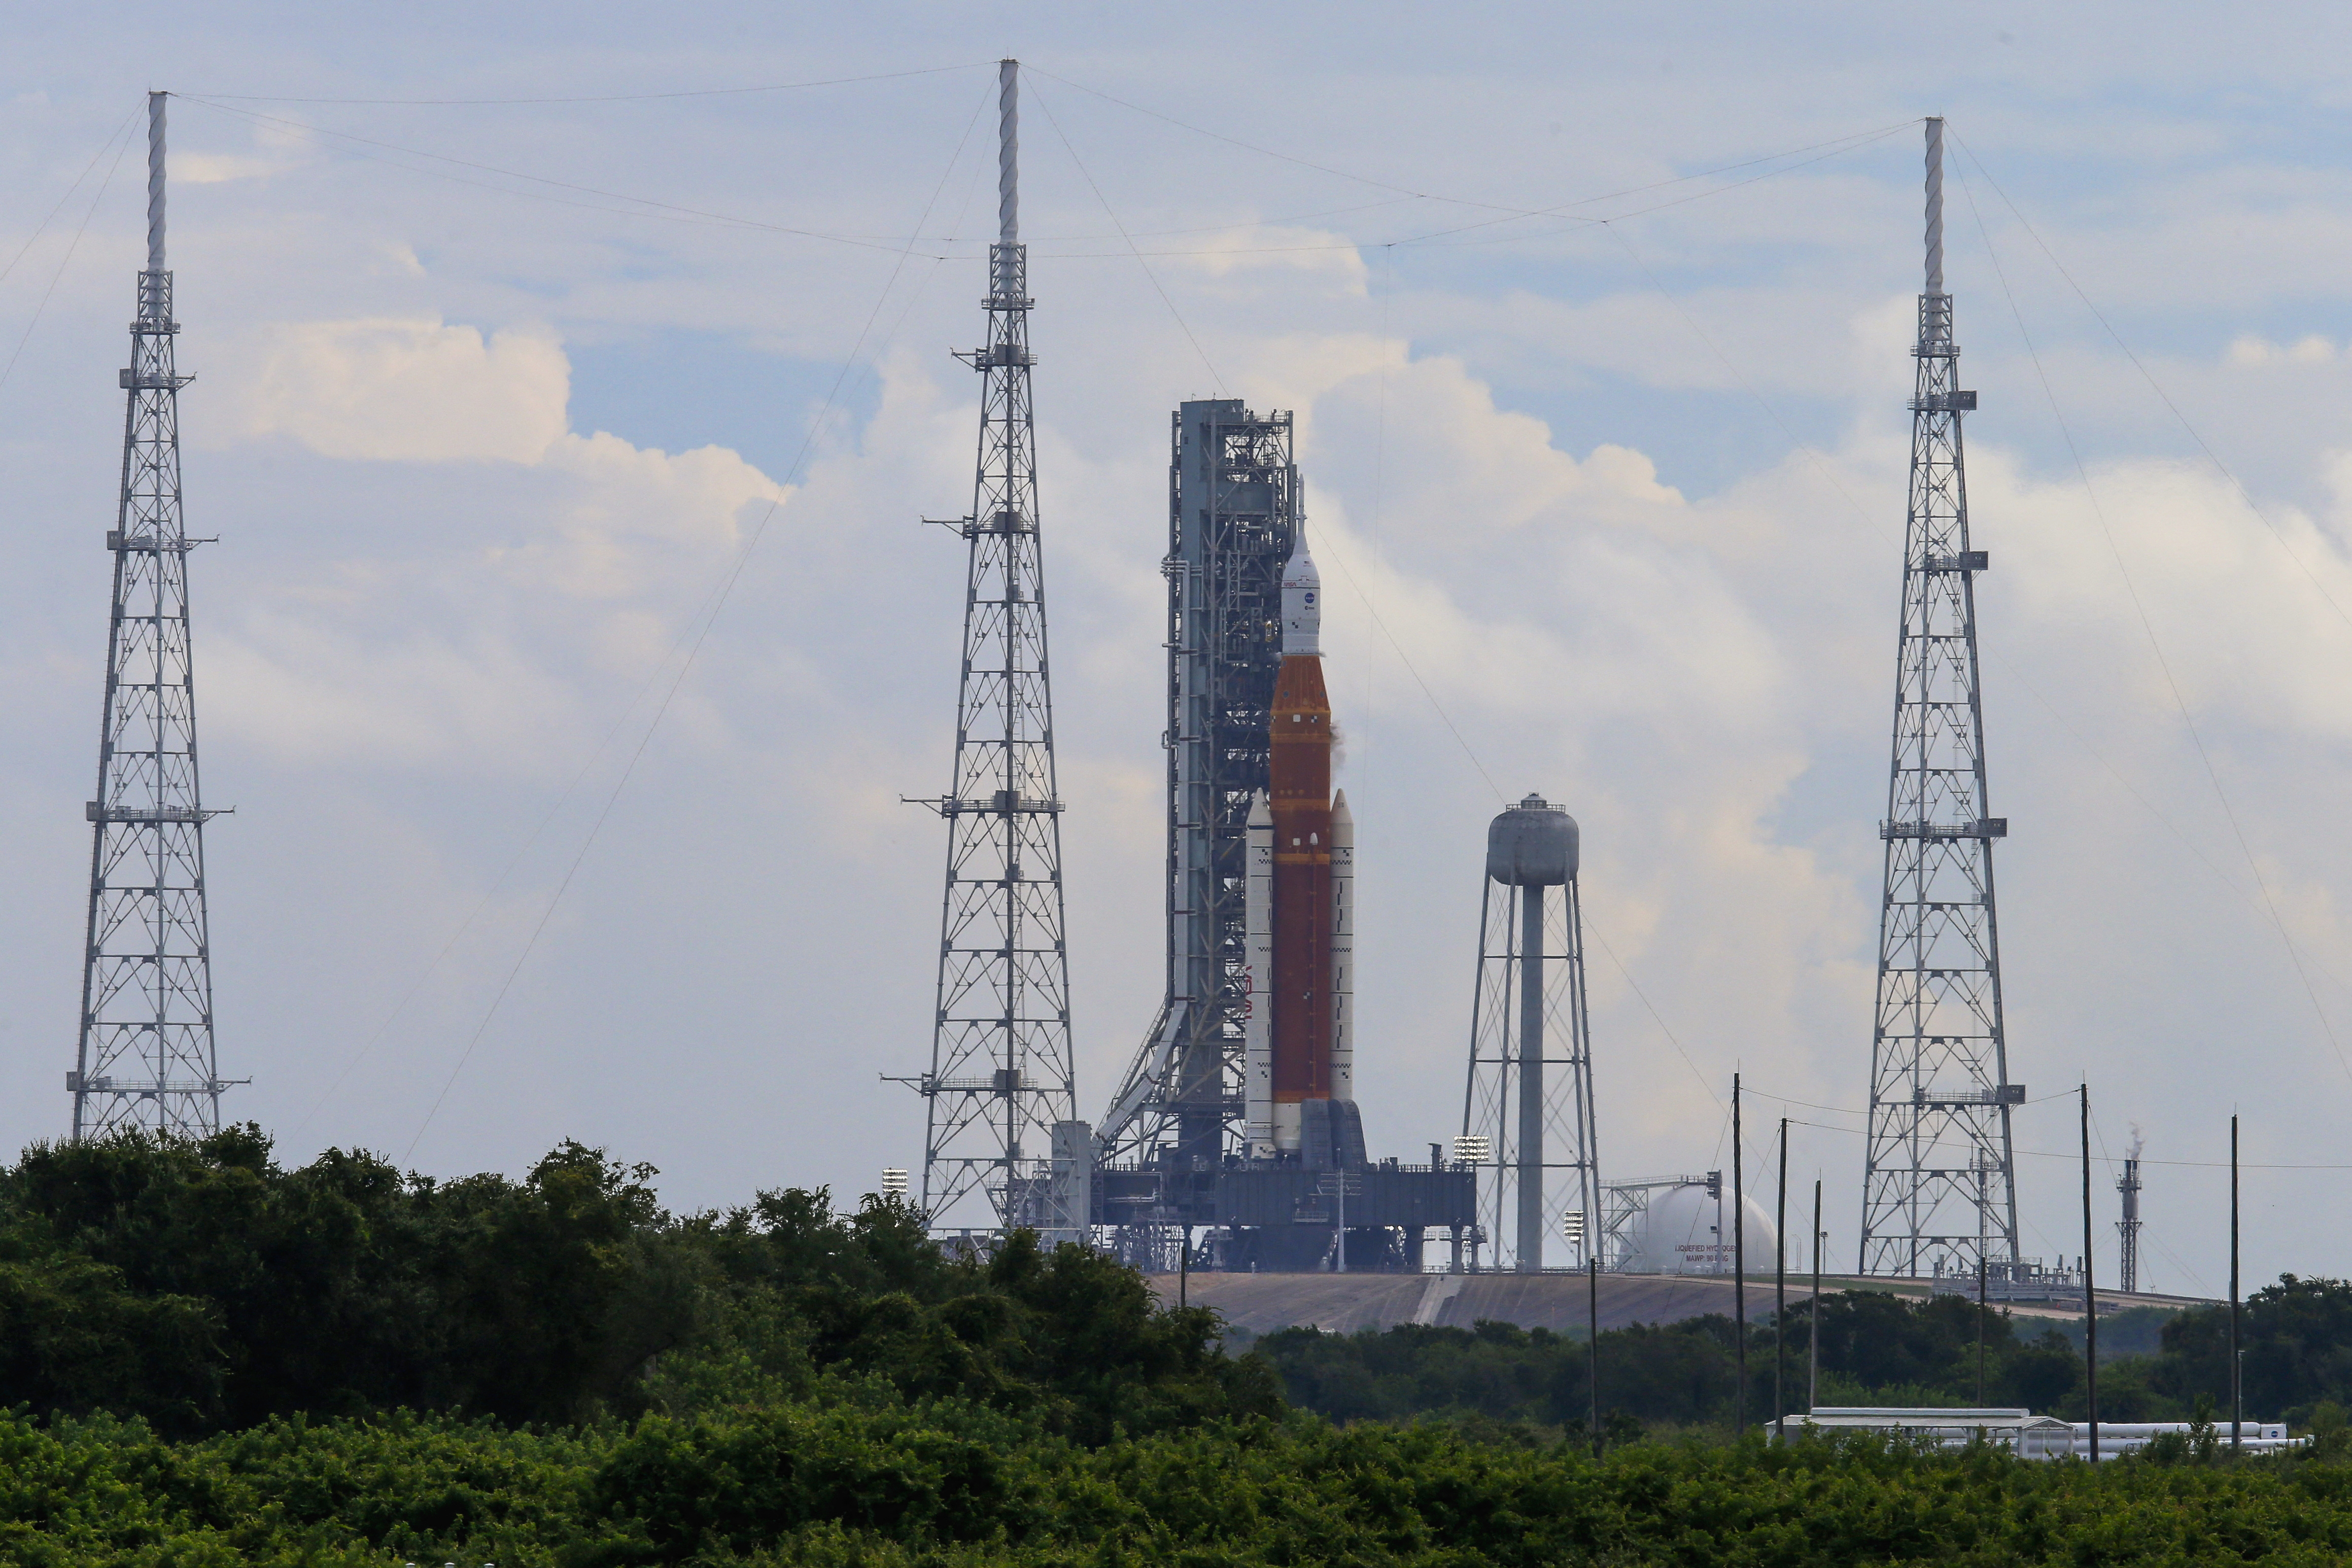 El cohete Space Launch System de 98 metros (322 pies) es el más poderoso jamás construido por la NASA. Se dispone a enviar una cápsula vacía a la órbita lunar (REUTERS/Joe Skipper)